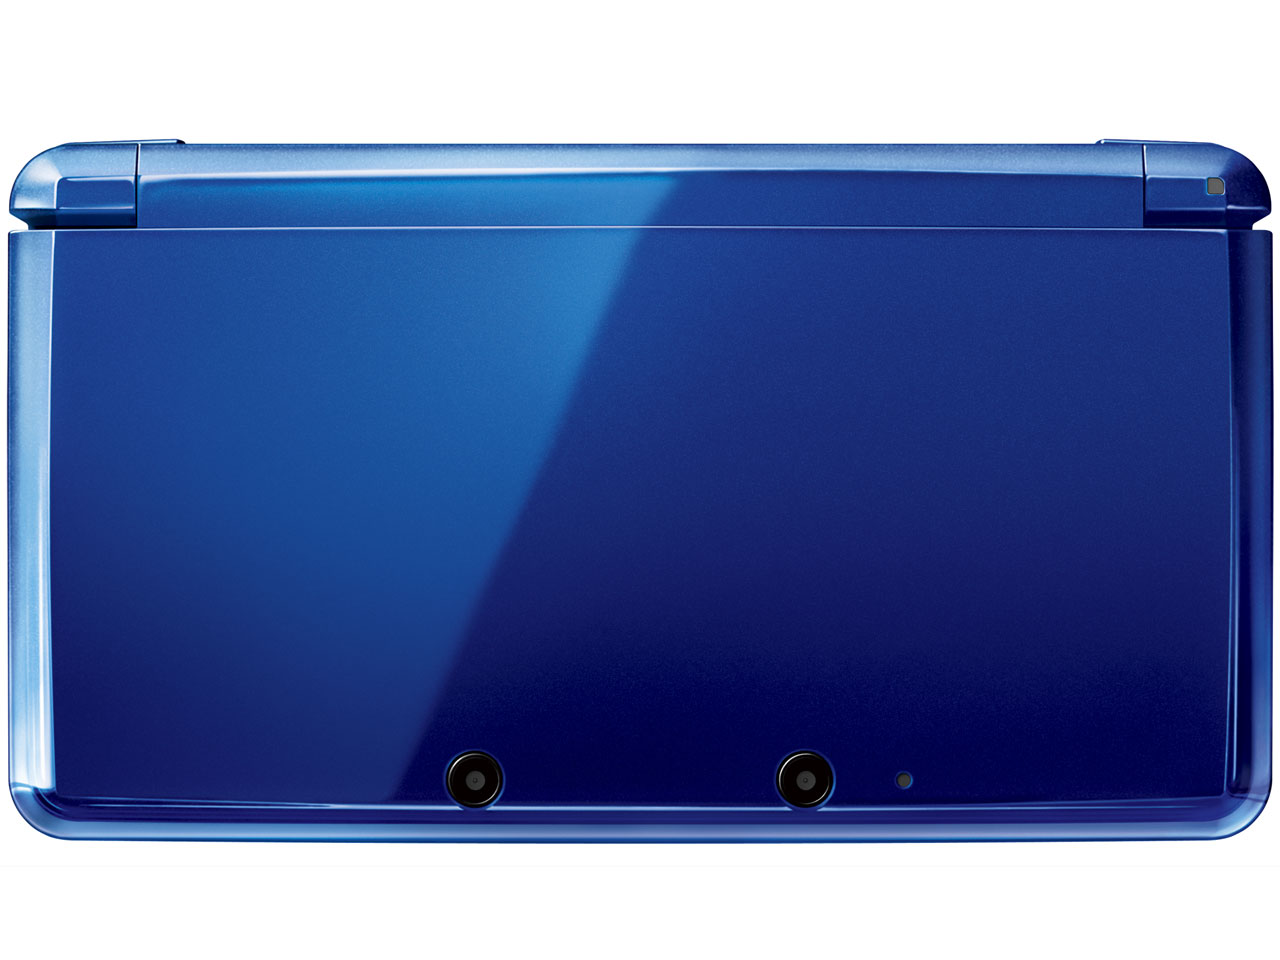 価格 Com 本体 正面 ニンテンドー3ds コバルトブルー の製品画像